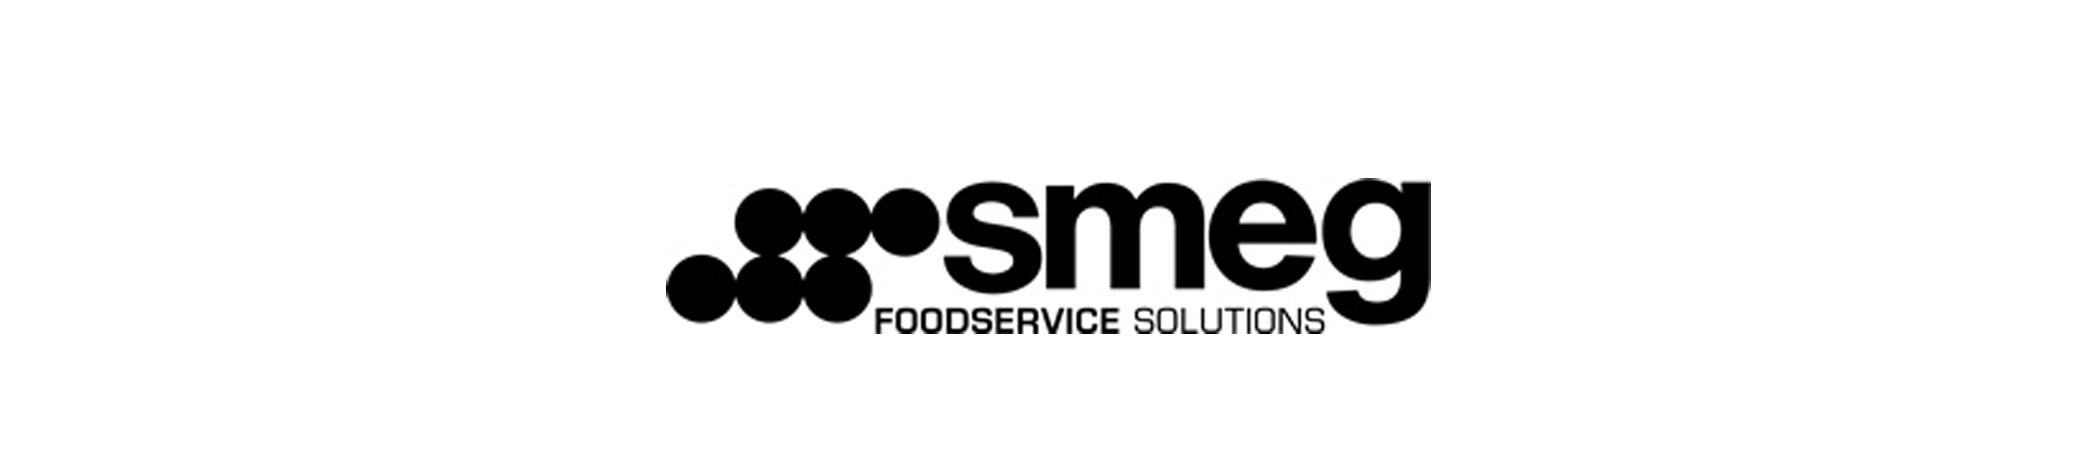 smeg-foodservice-brand.jpg